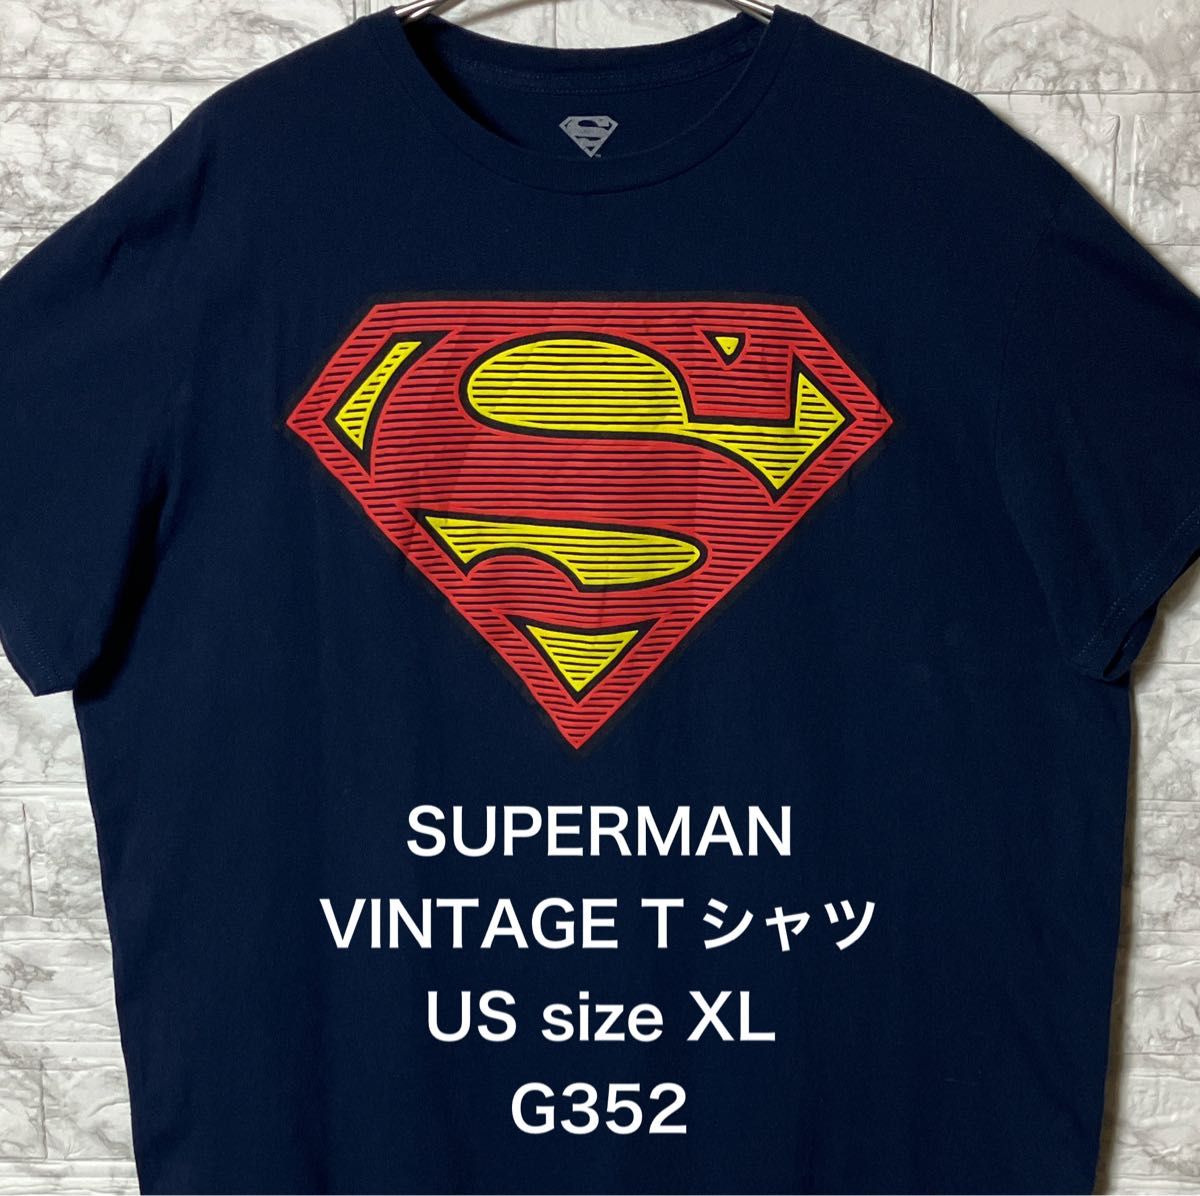 USA アメリカ古着 SUPERMANビッグロゴプリント XLsize ネイビーTシャツ スーパーマン ビンテージ オーバーサイズ